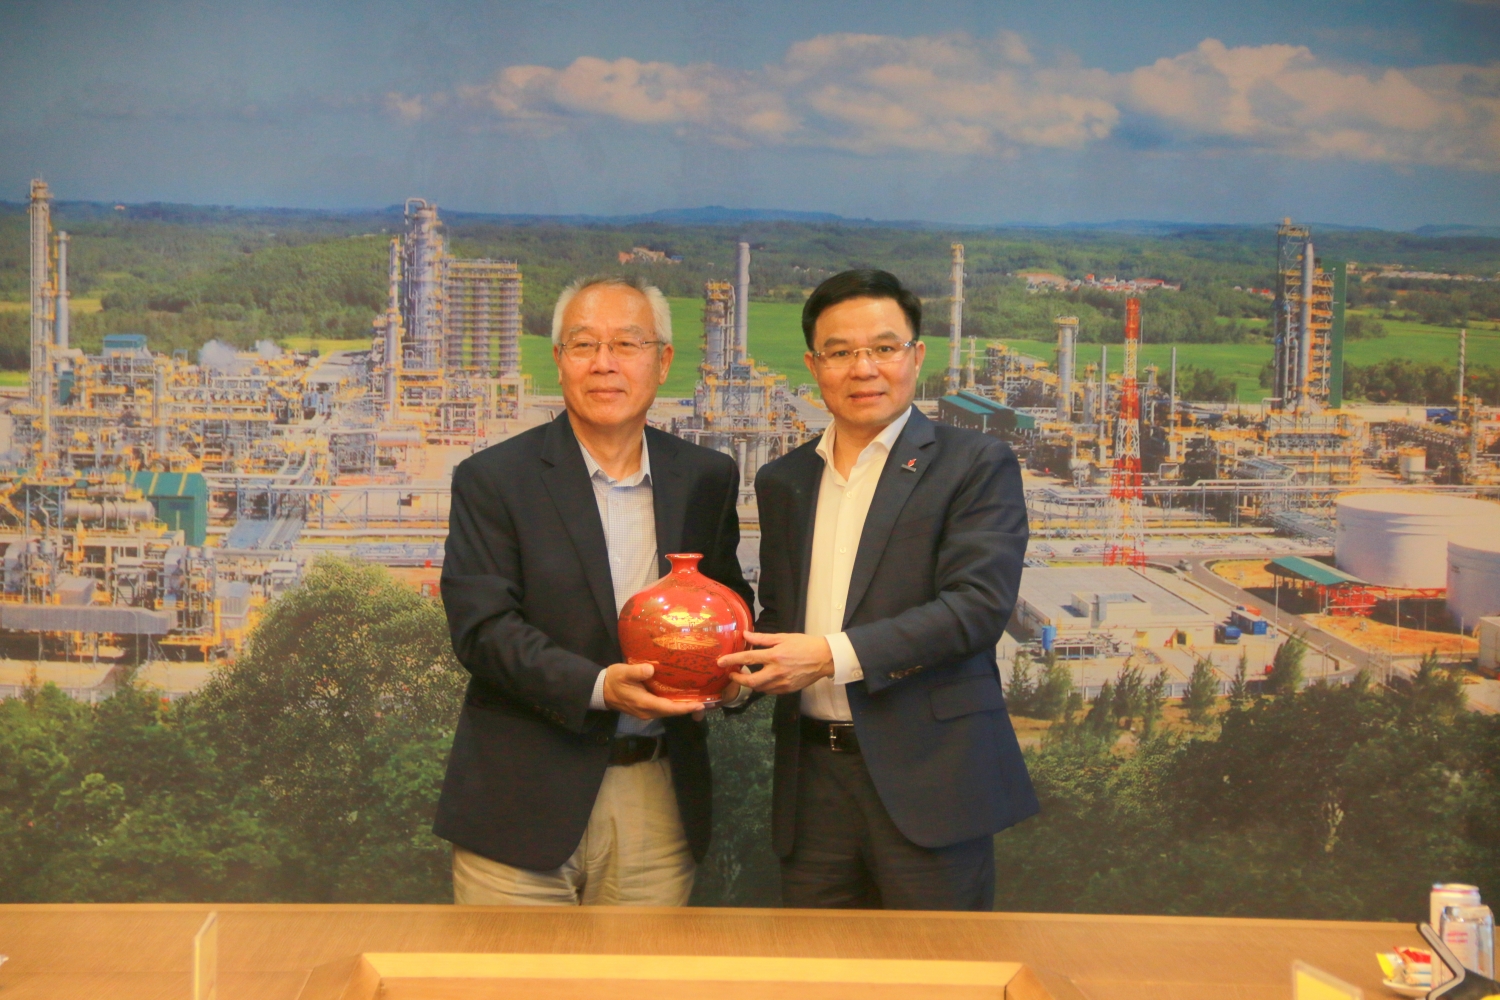 Tổng Giám đốcPetrovietnam Lê Mạnh Hùng trao quà lưu niệm đến ông Changjie Gou, Giám đốc Chương trình Industrial Liaison Program (ILP)